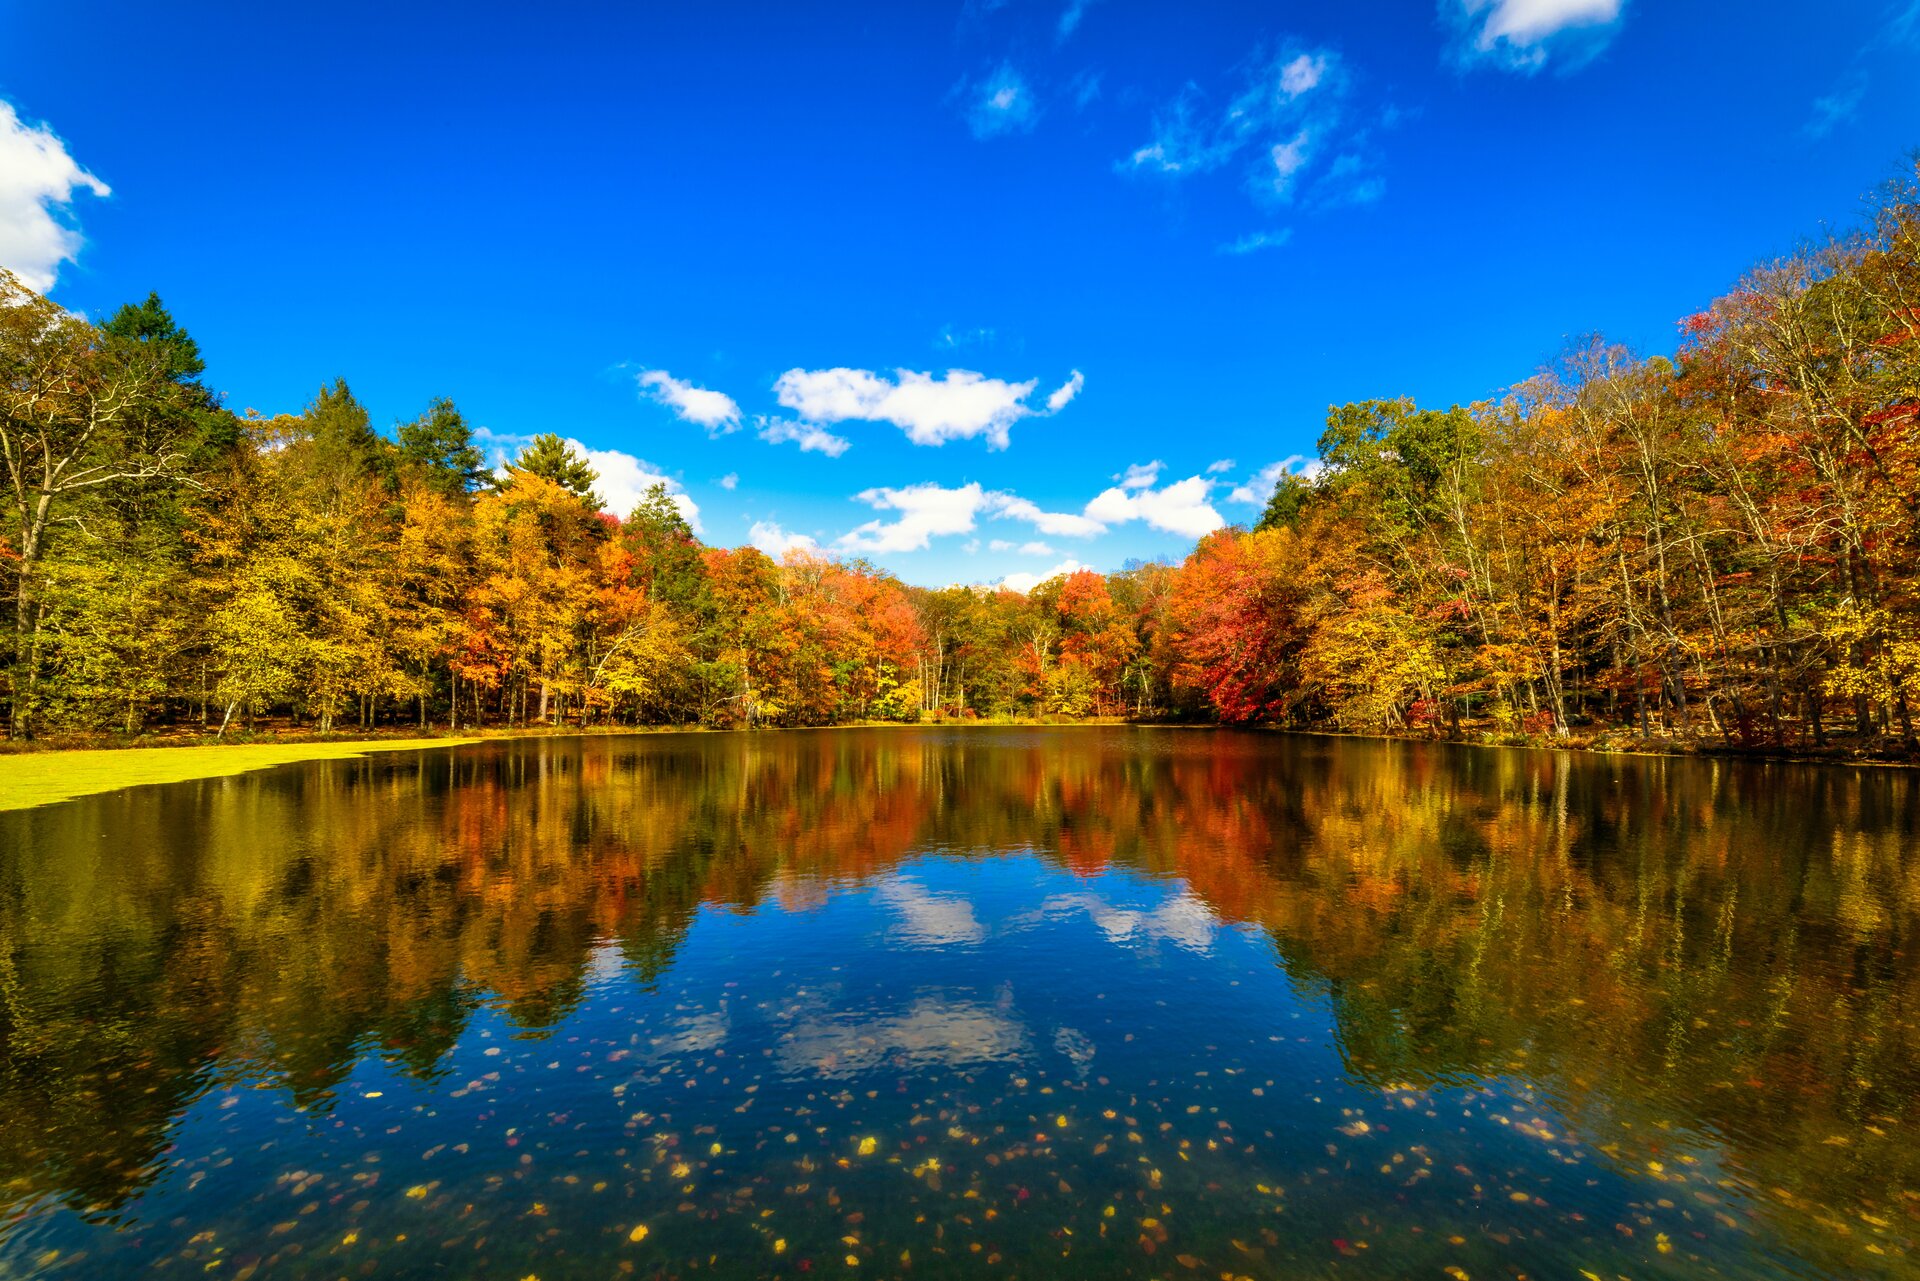 Beautiful lake in the fall